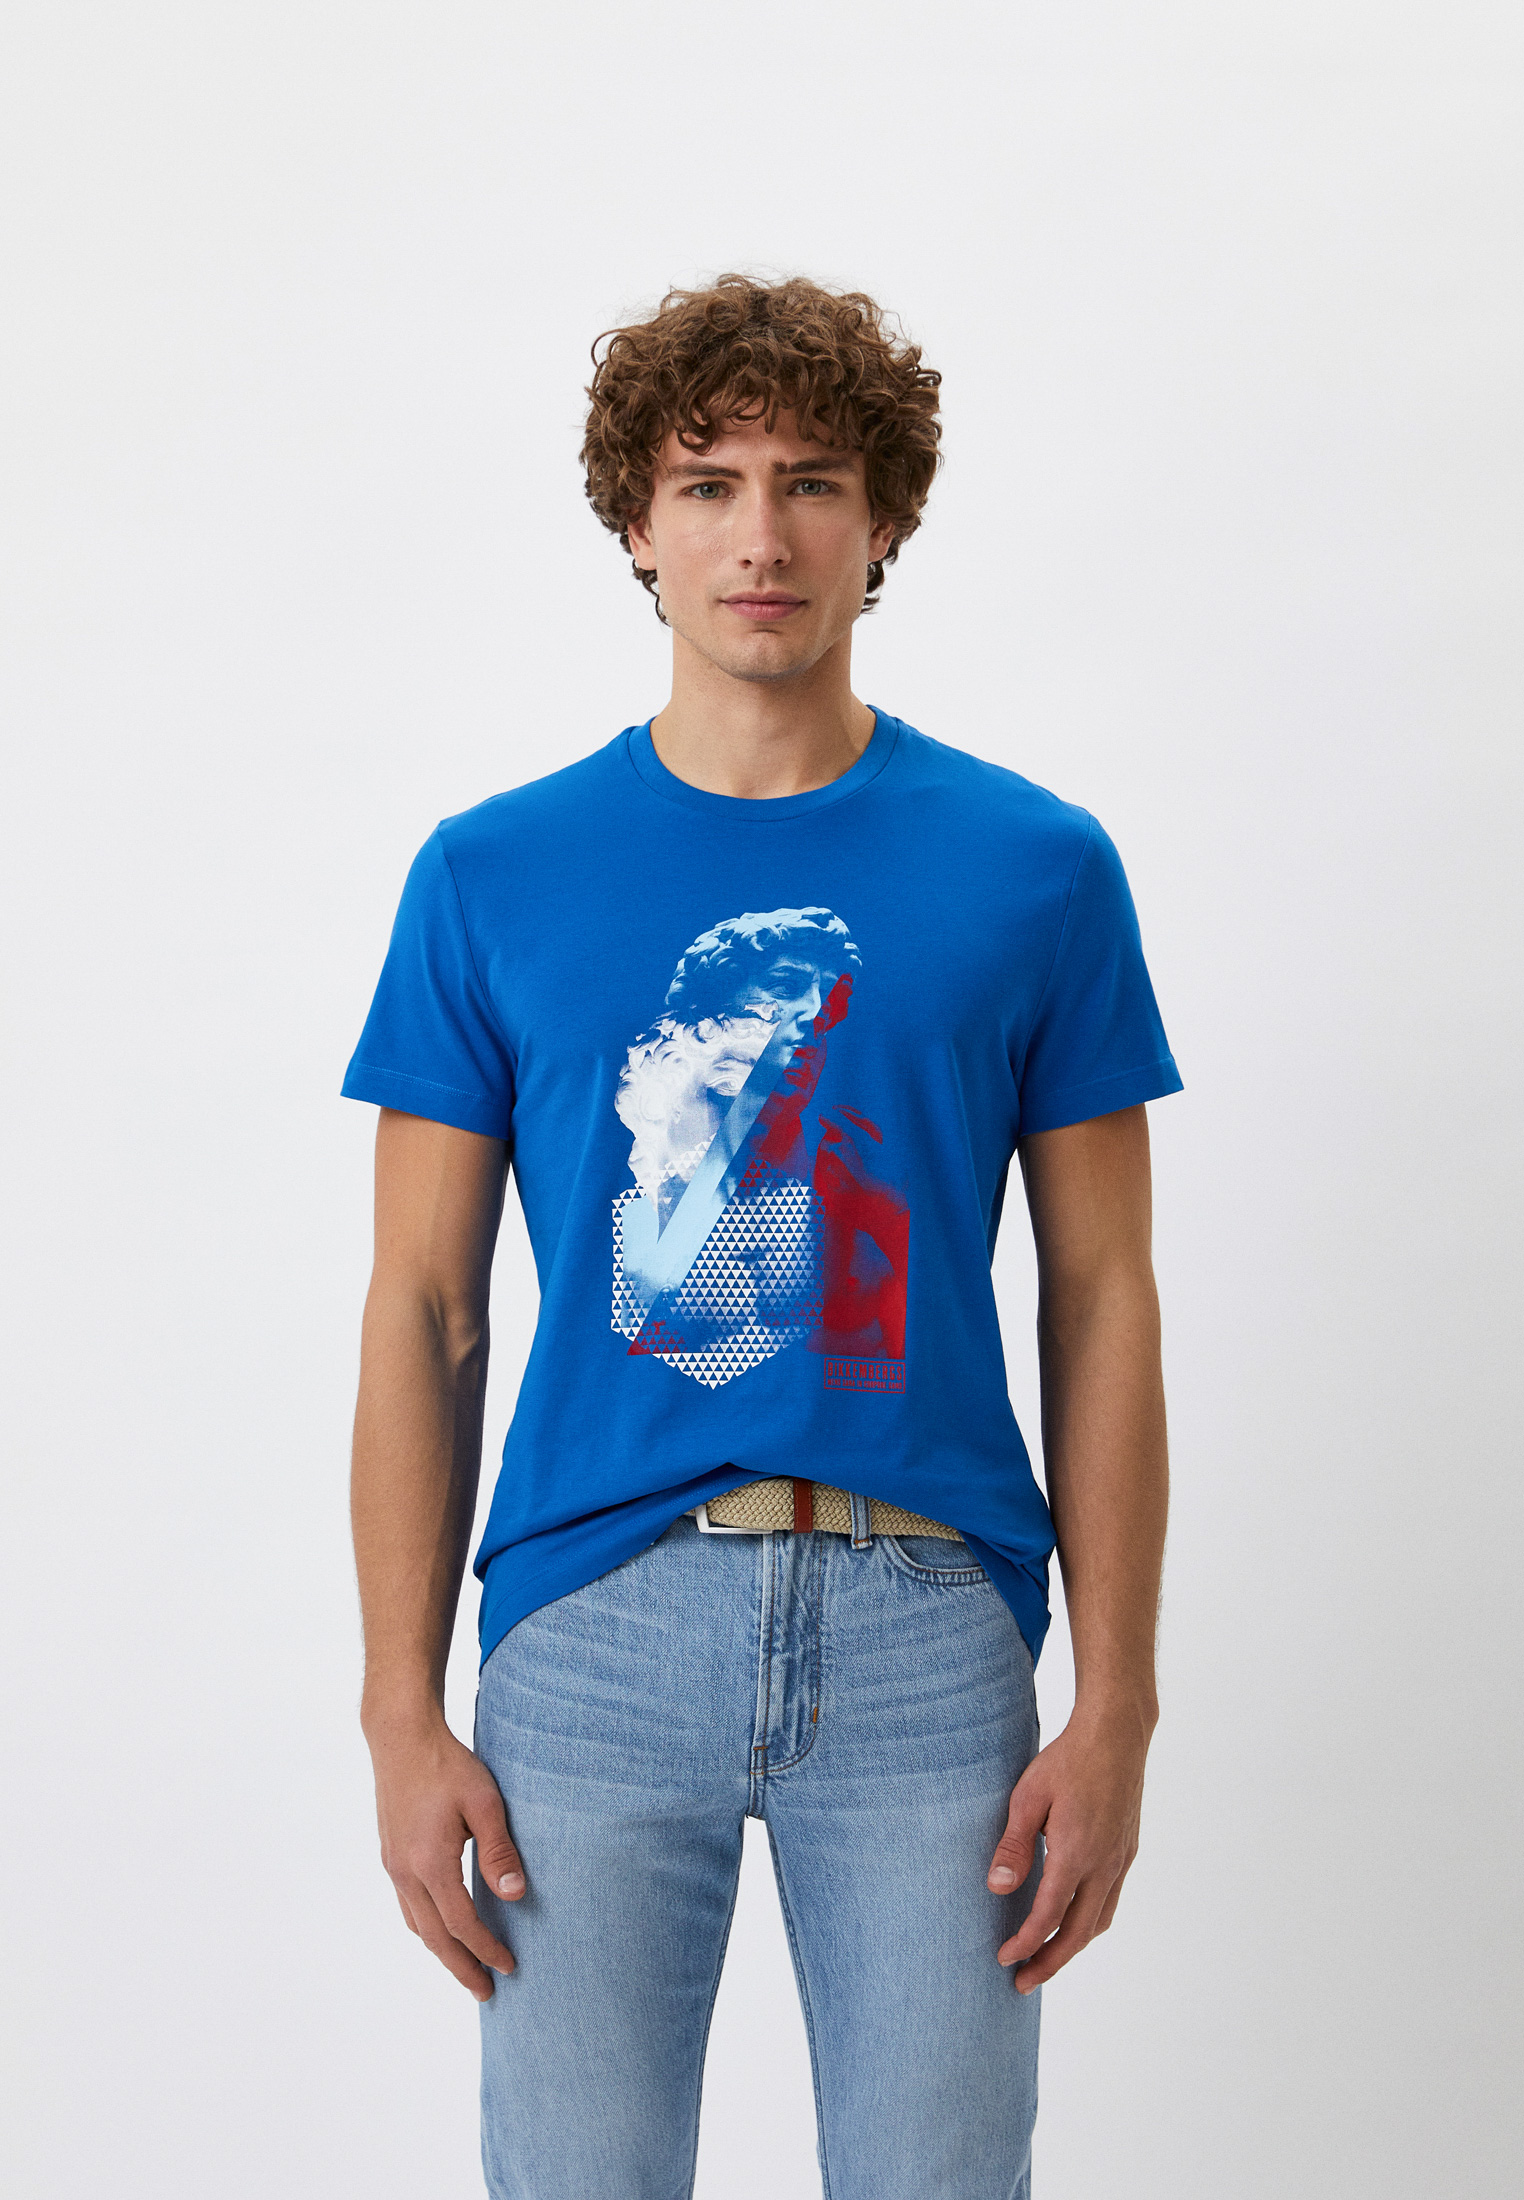 Мужская футболка Bikkembergs (Биккембергс) C 4 101 1N E 2359: изображение 1